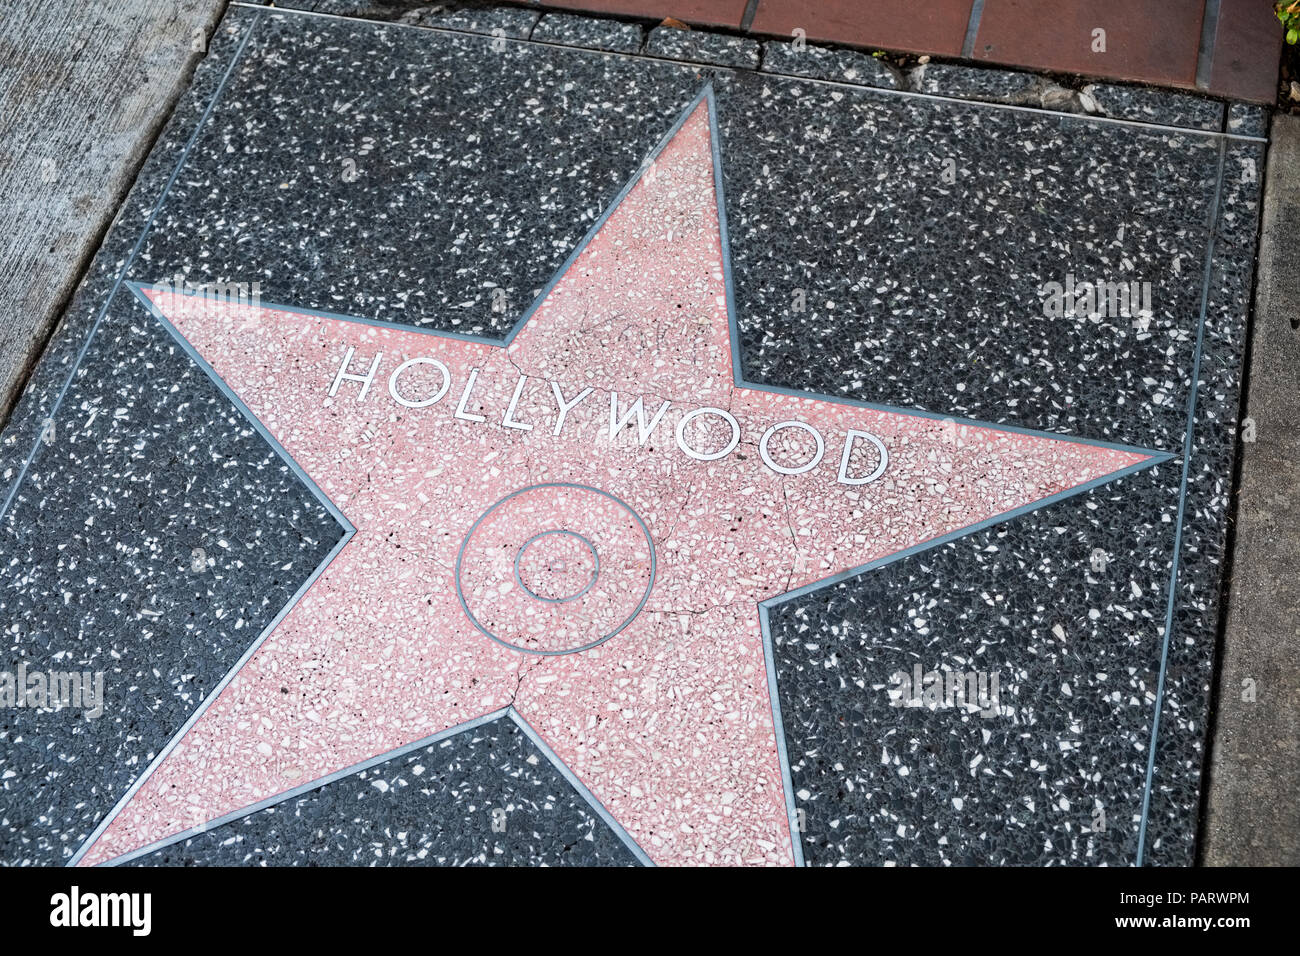 La estrella de Hollywood en el Paseo de la Fama de Hollywood Boulevard, Los Ángeles, Los Ángeles, California, EE.UU. Foto de stock